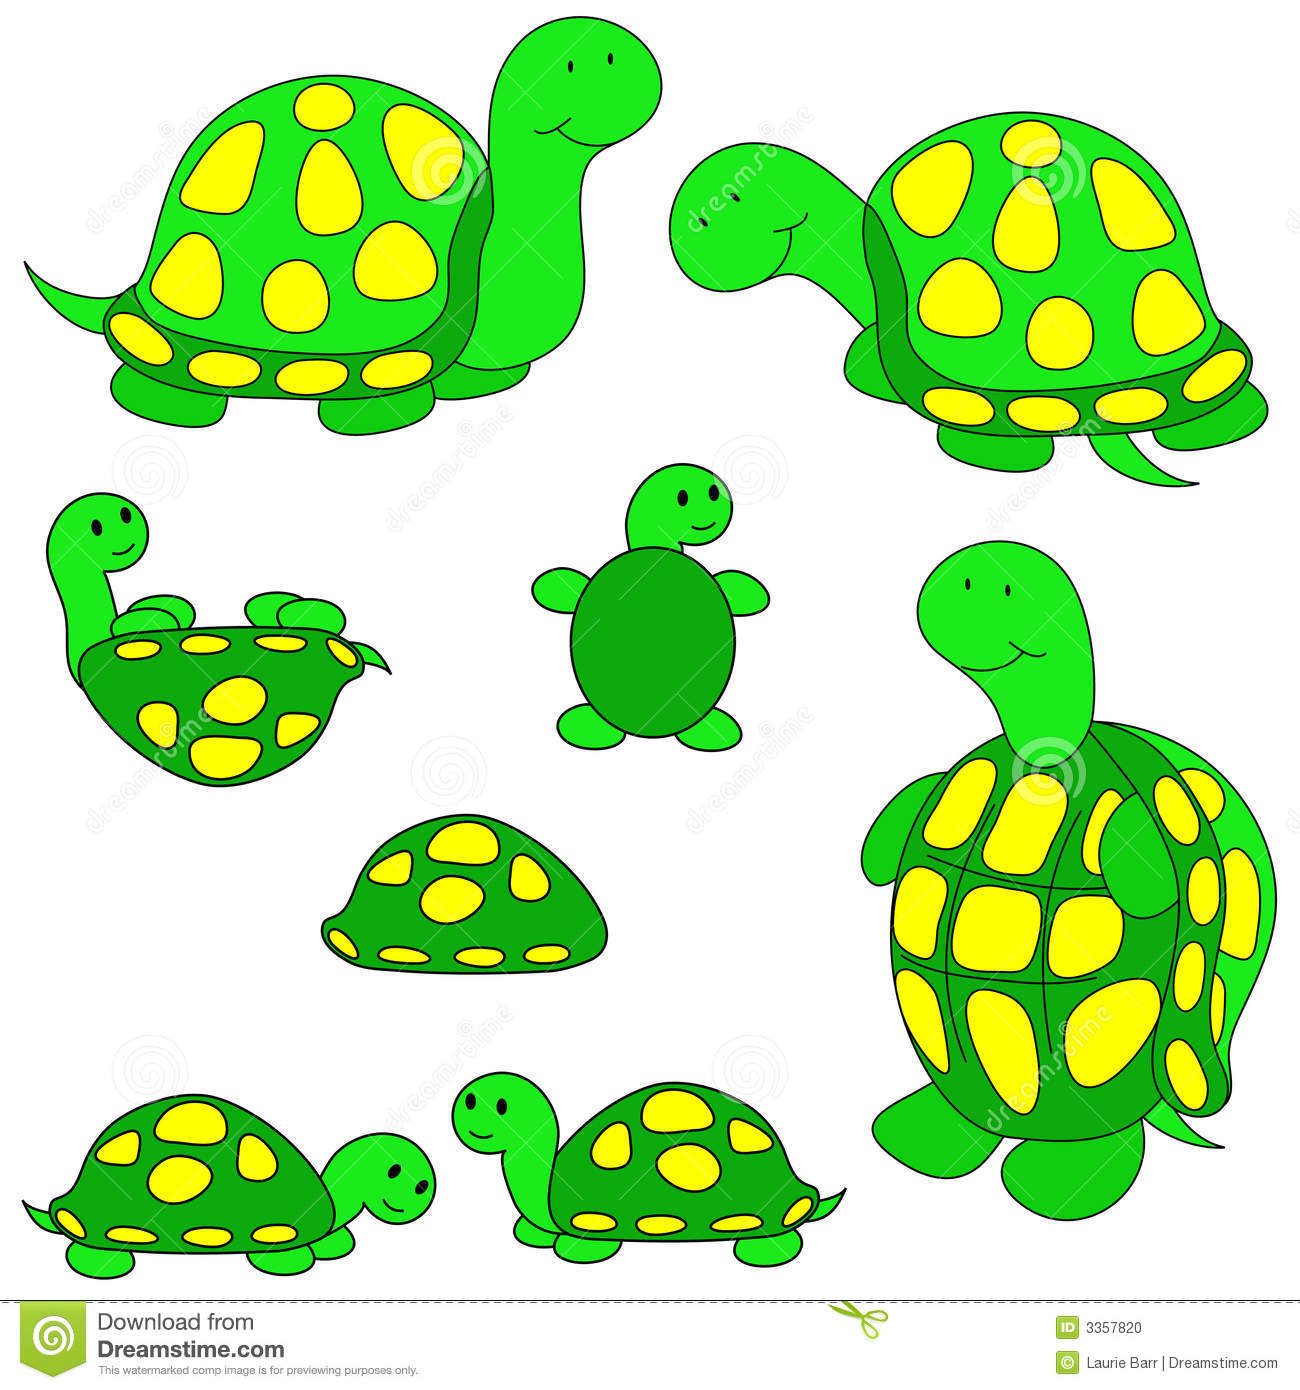 Turtle clip-art. - Turtle Images Clip Art